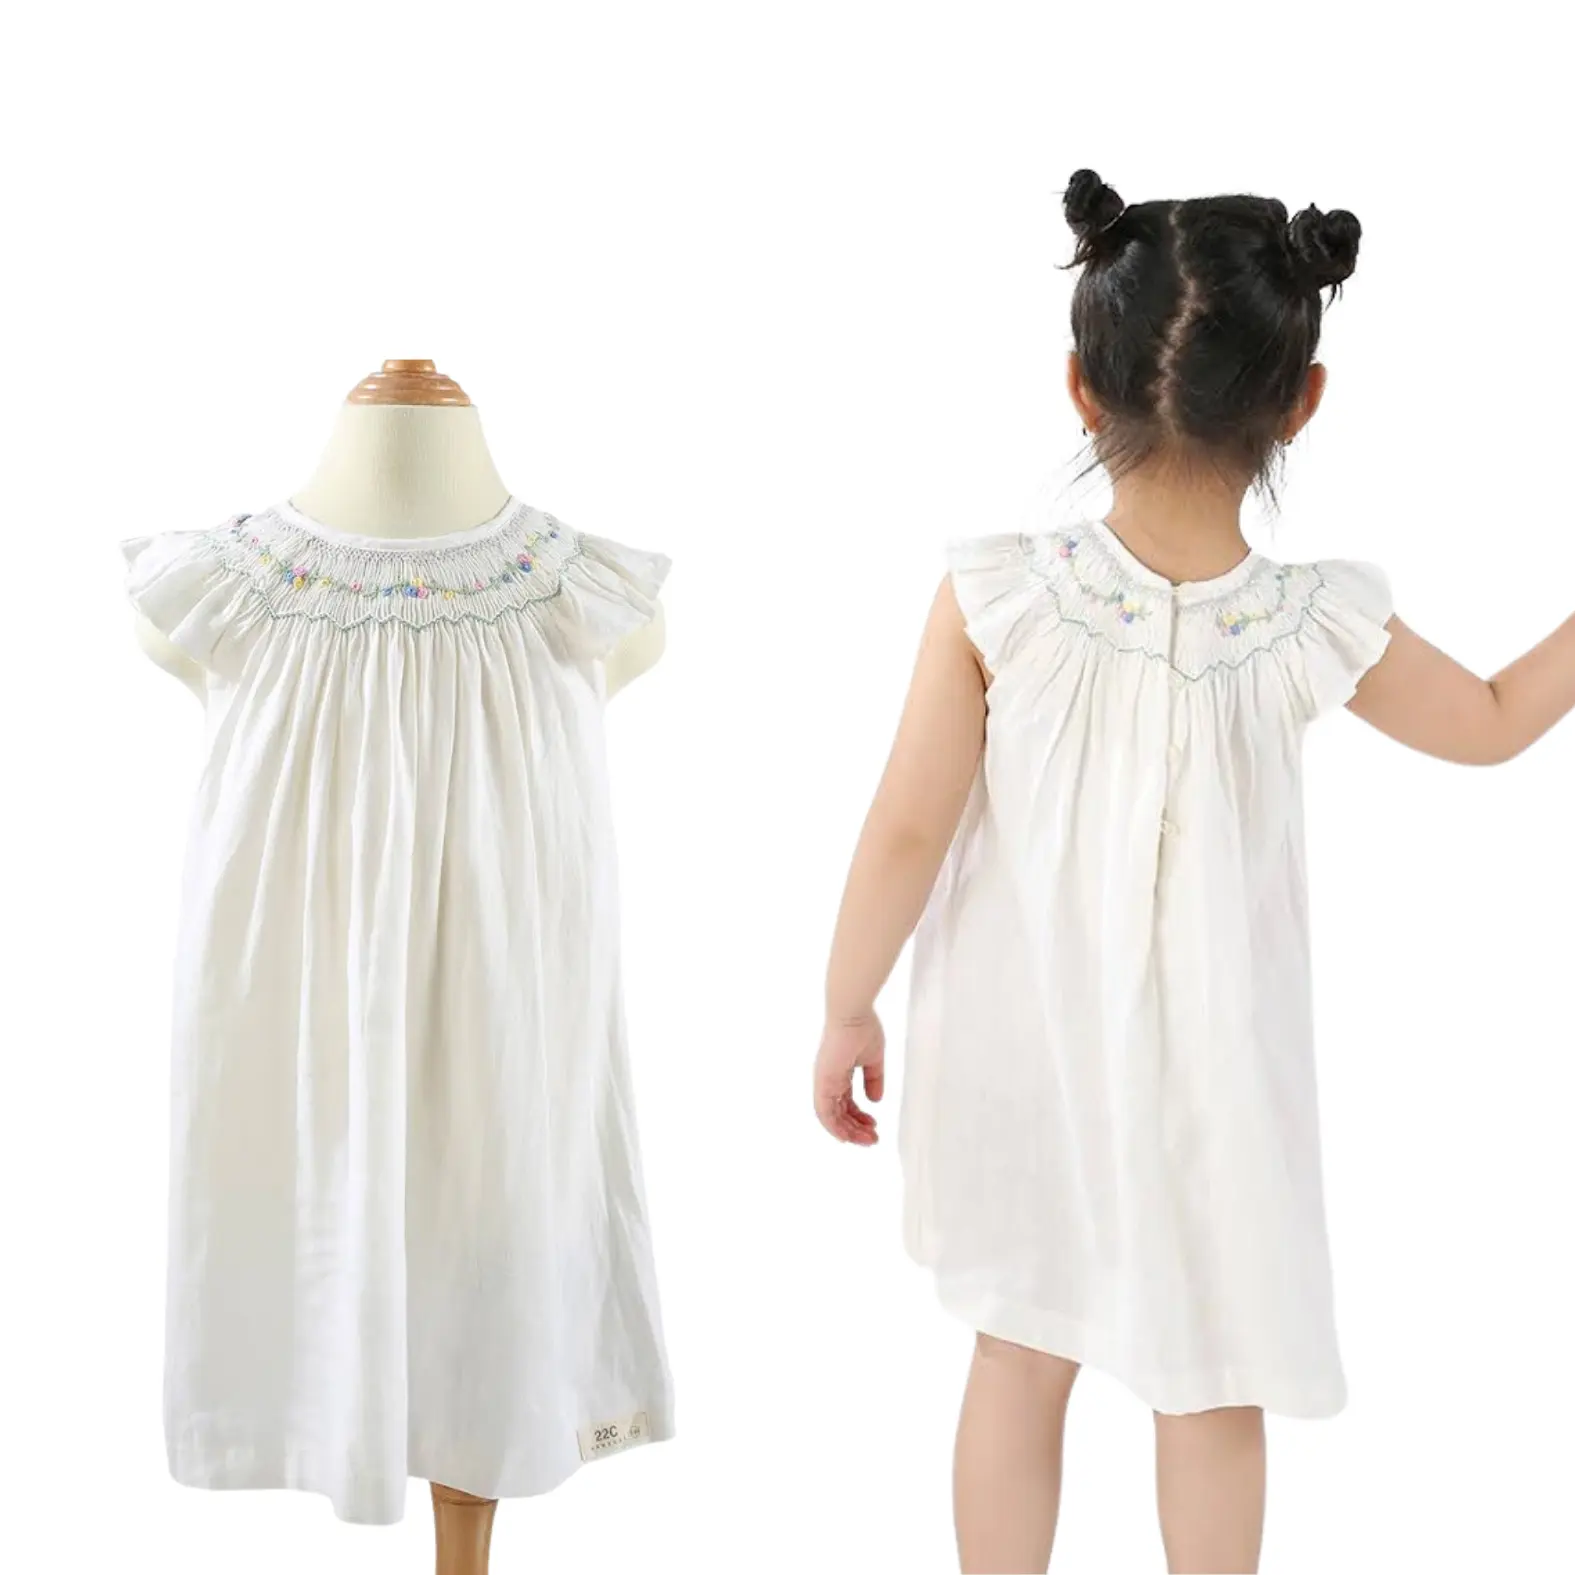 Children's Clothing Girl's Clothing Girls Dresses Smock Girl Smocked Dress For Kid White Short Cotton Customized Design